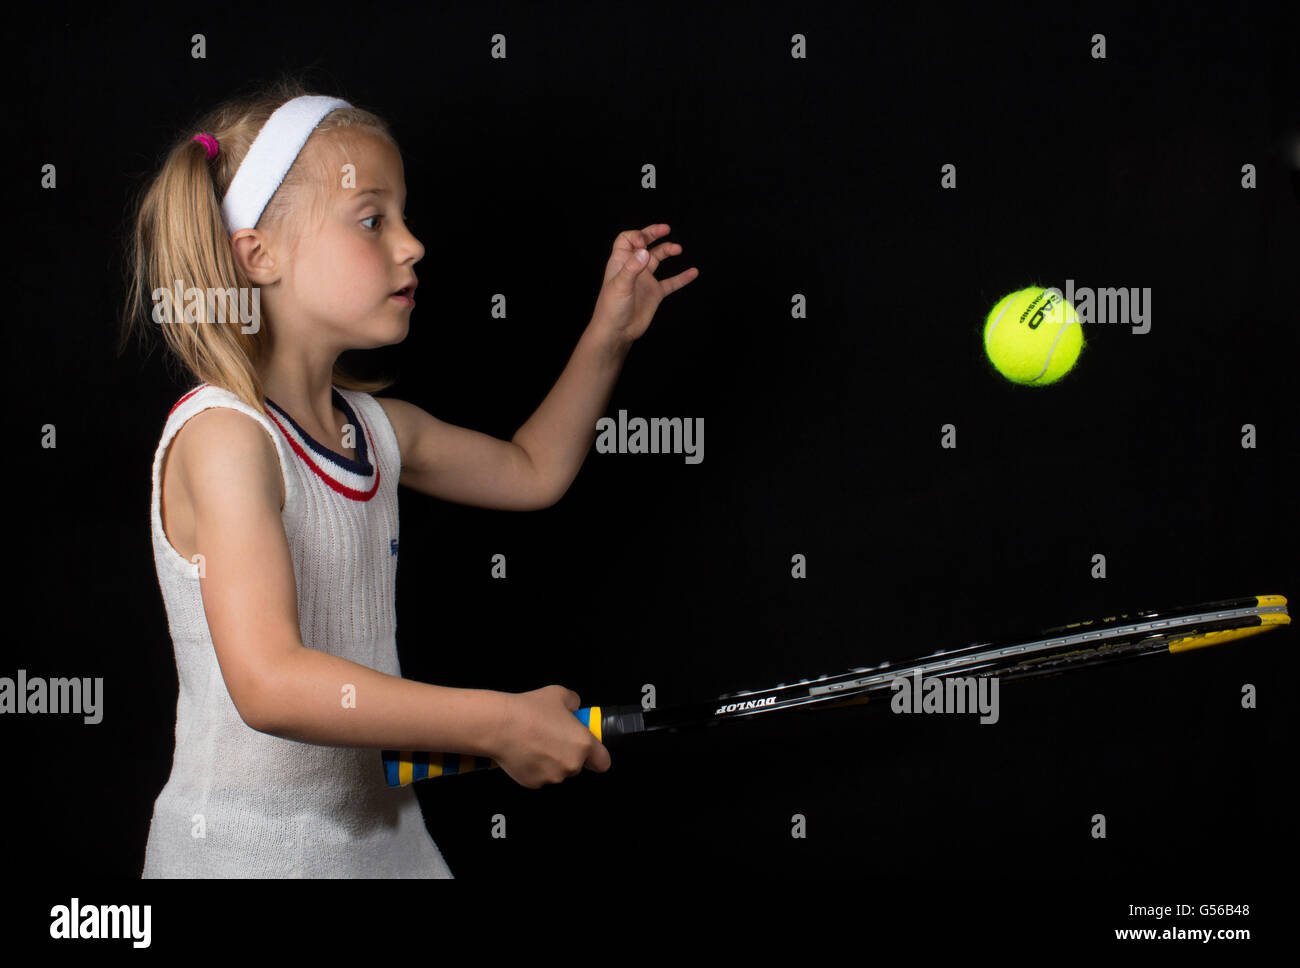 Portrait humoristique d'une jeune fille jouant au tennis Banque D'Images